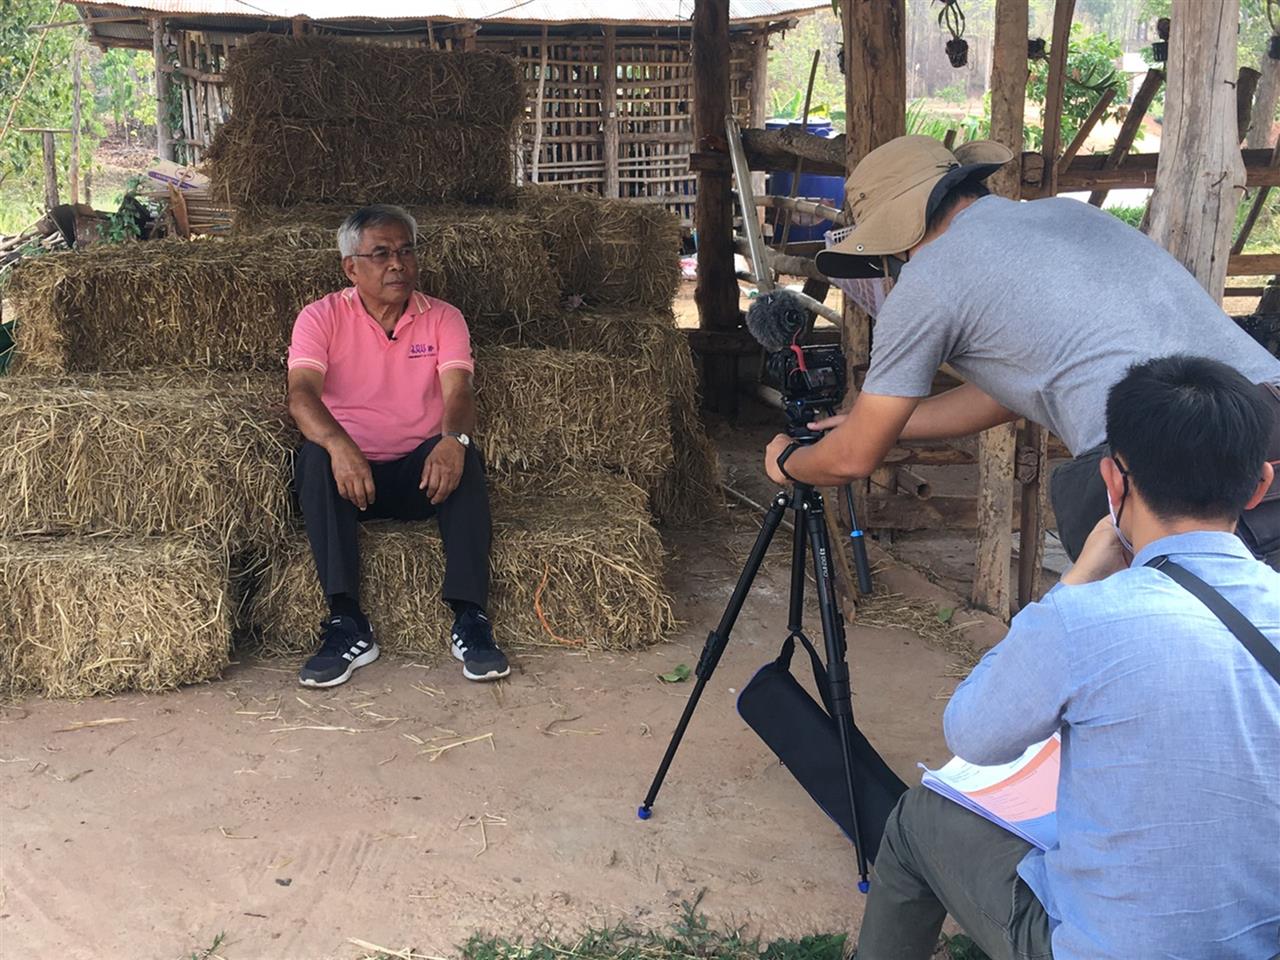 คณะเกษตรศาสตร์และทรัพยากรธรรมชาติ ม.พะเยา ต้อนรับทีม "ชีวิตนอกกรุง Localist" ซึ่งเป็นสารคดีเชิงข่าวจากช่อง Thai PBS 